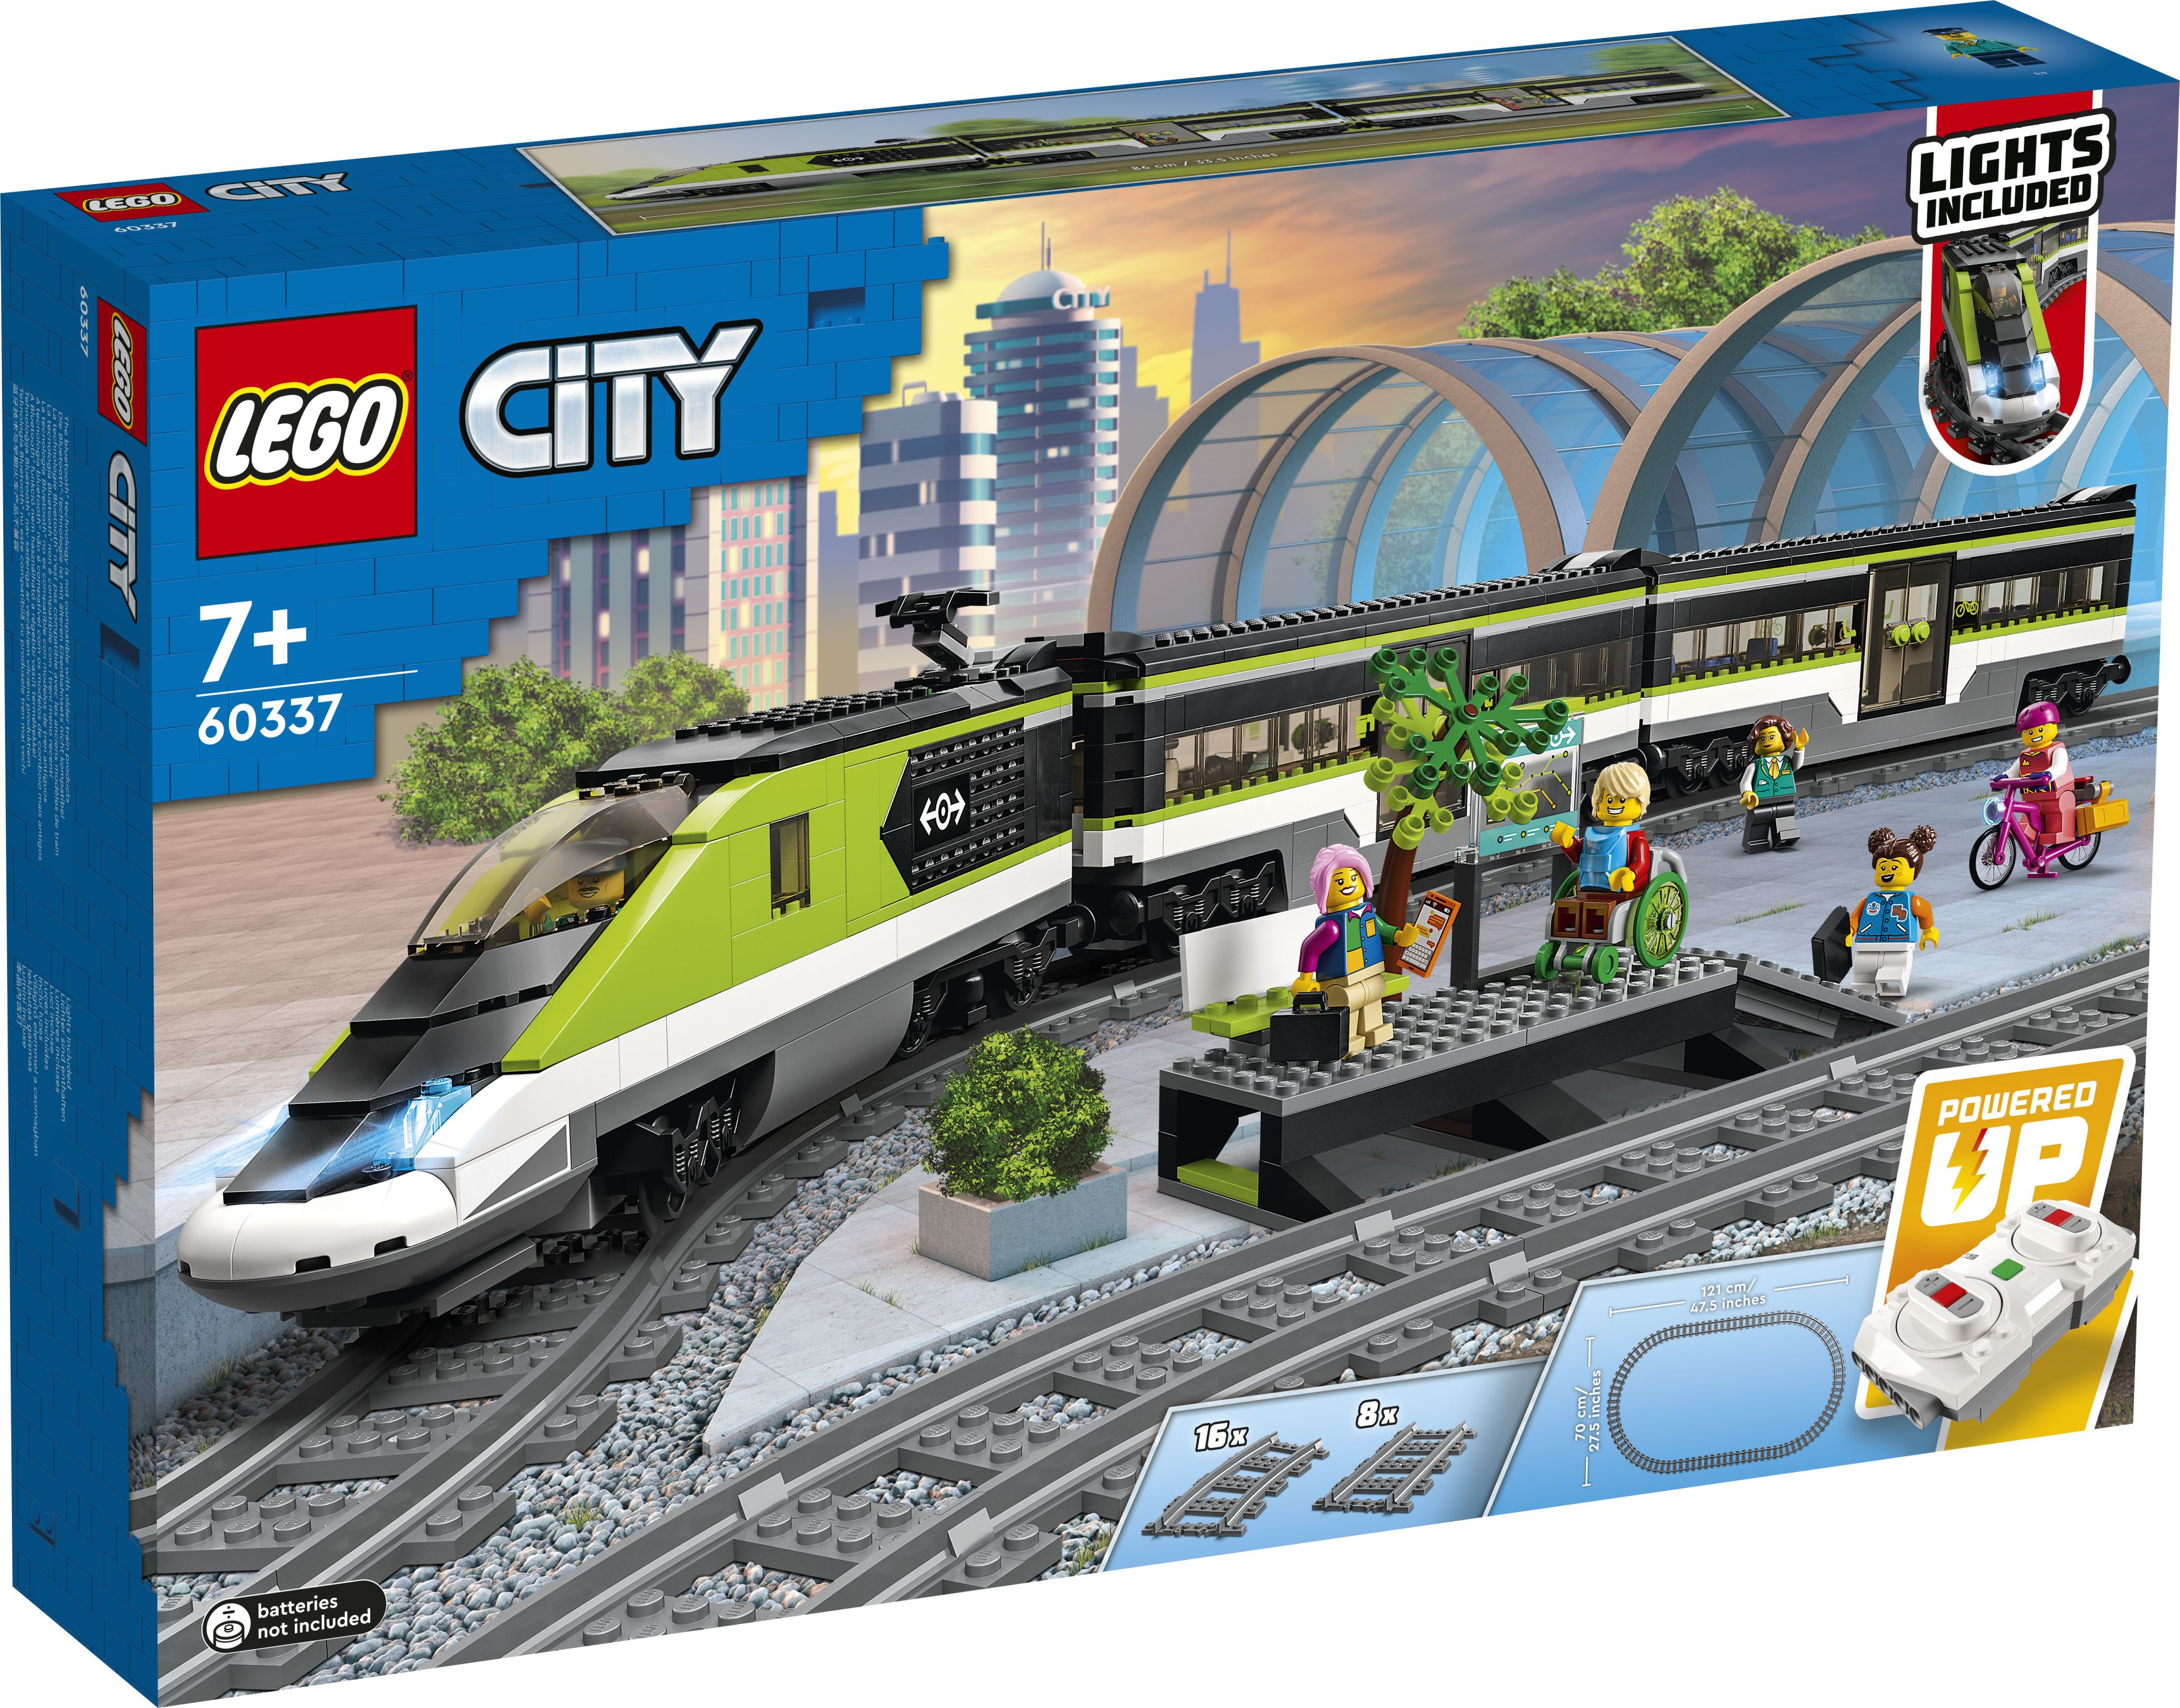 LEGO City 60337 Personen-Schnellzug LEGO_60337_Box1_v29.jpg